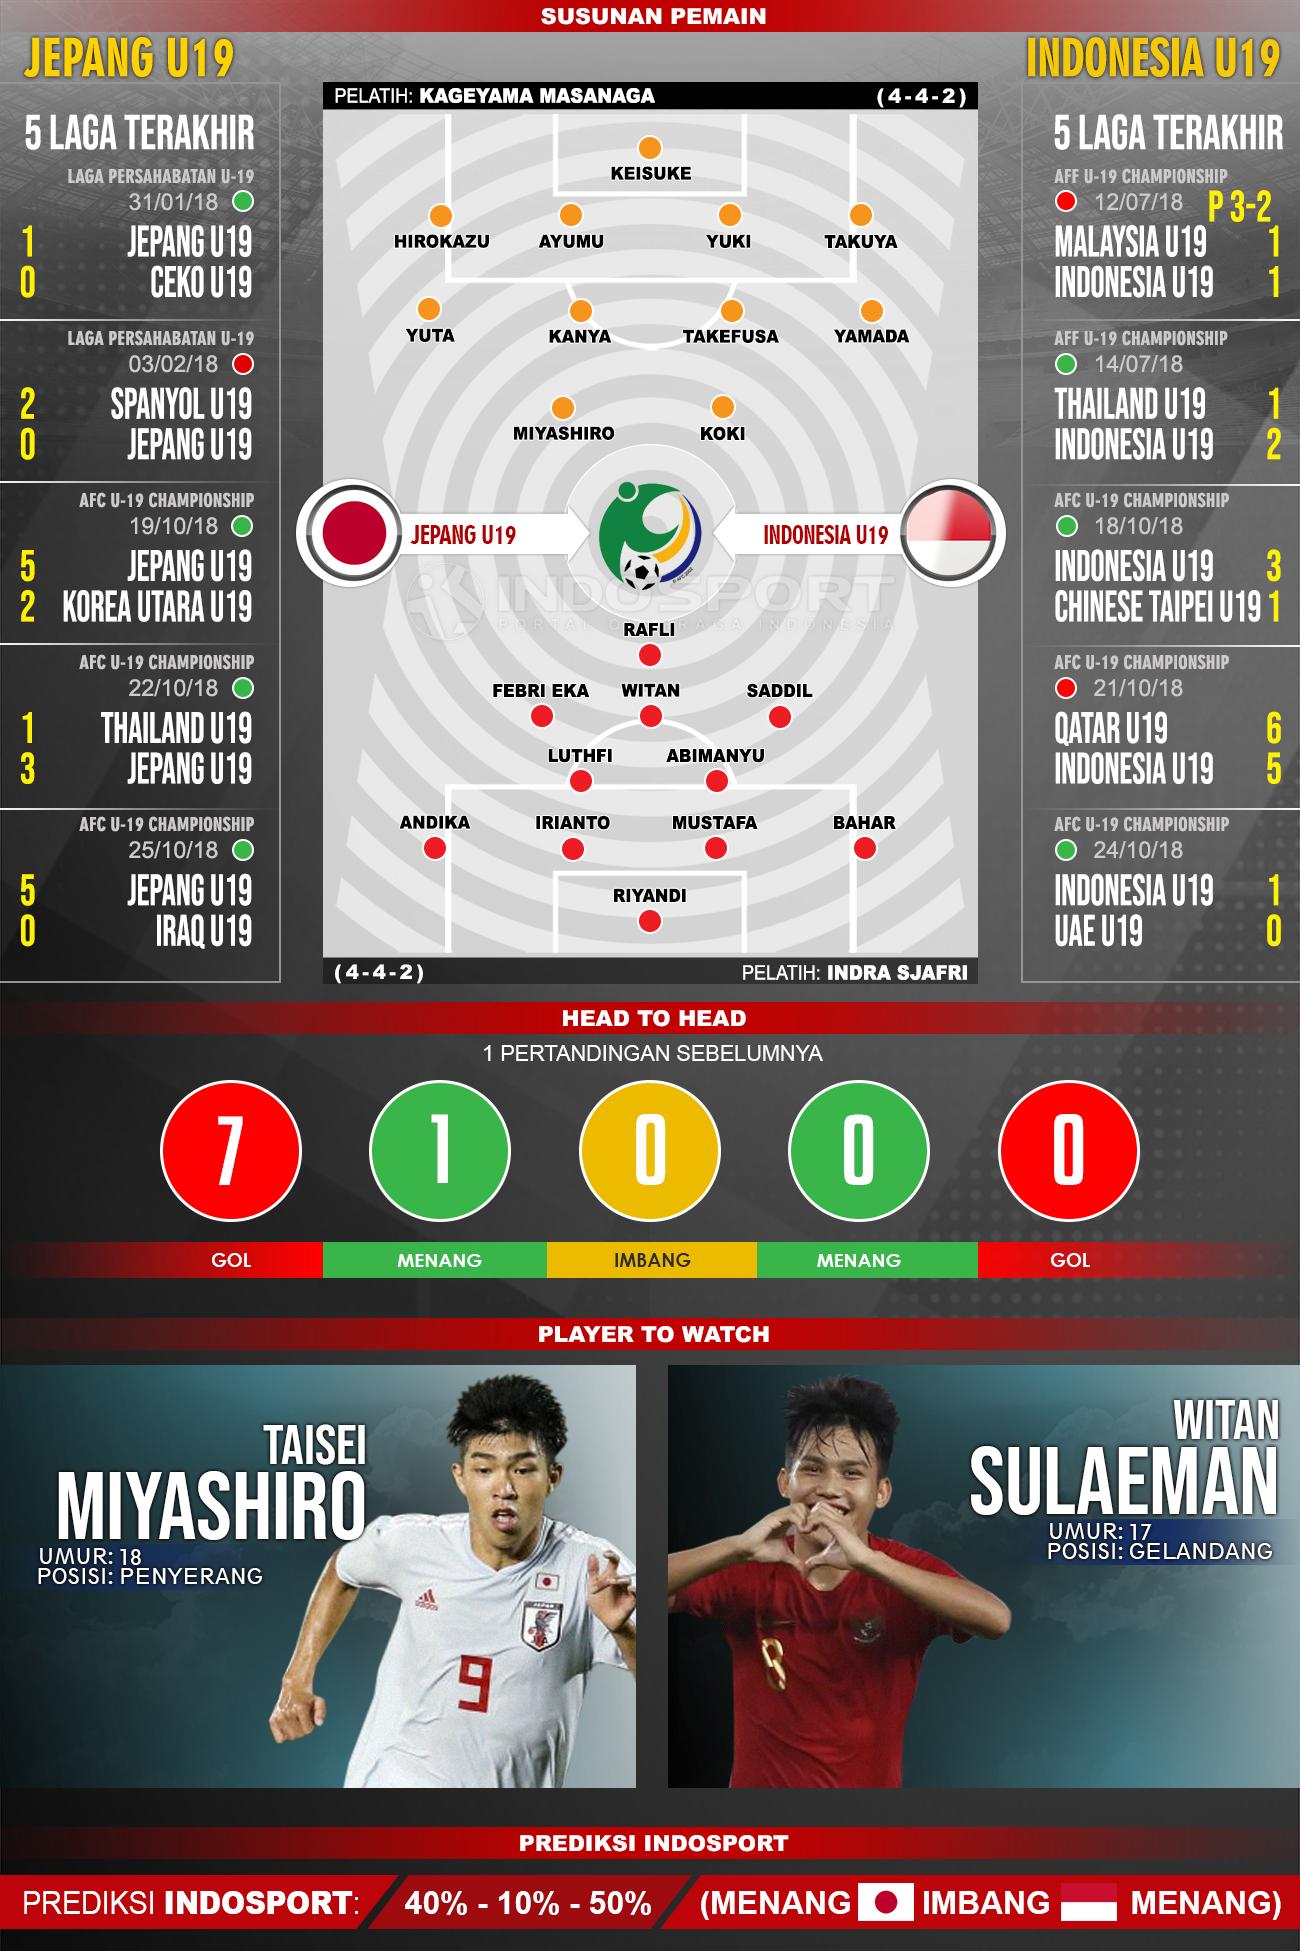 Prediksi Jepang U-19 vs Indonesia U-19 (Susunan Pemain - Lima Laga Terakhir - Player to Watch - Prediksi Indosport) Copyright: INDOSPORT